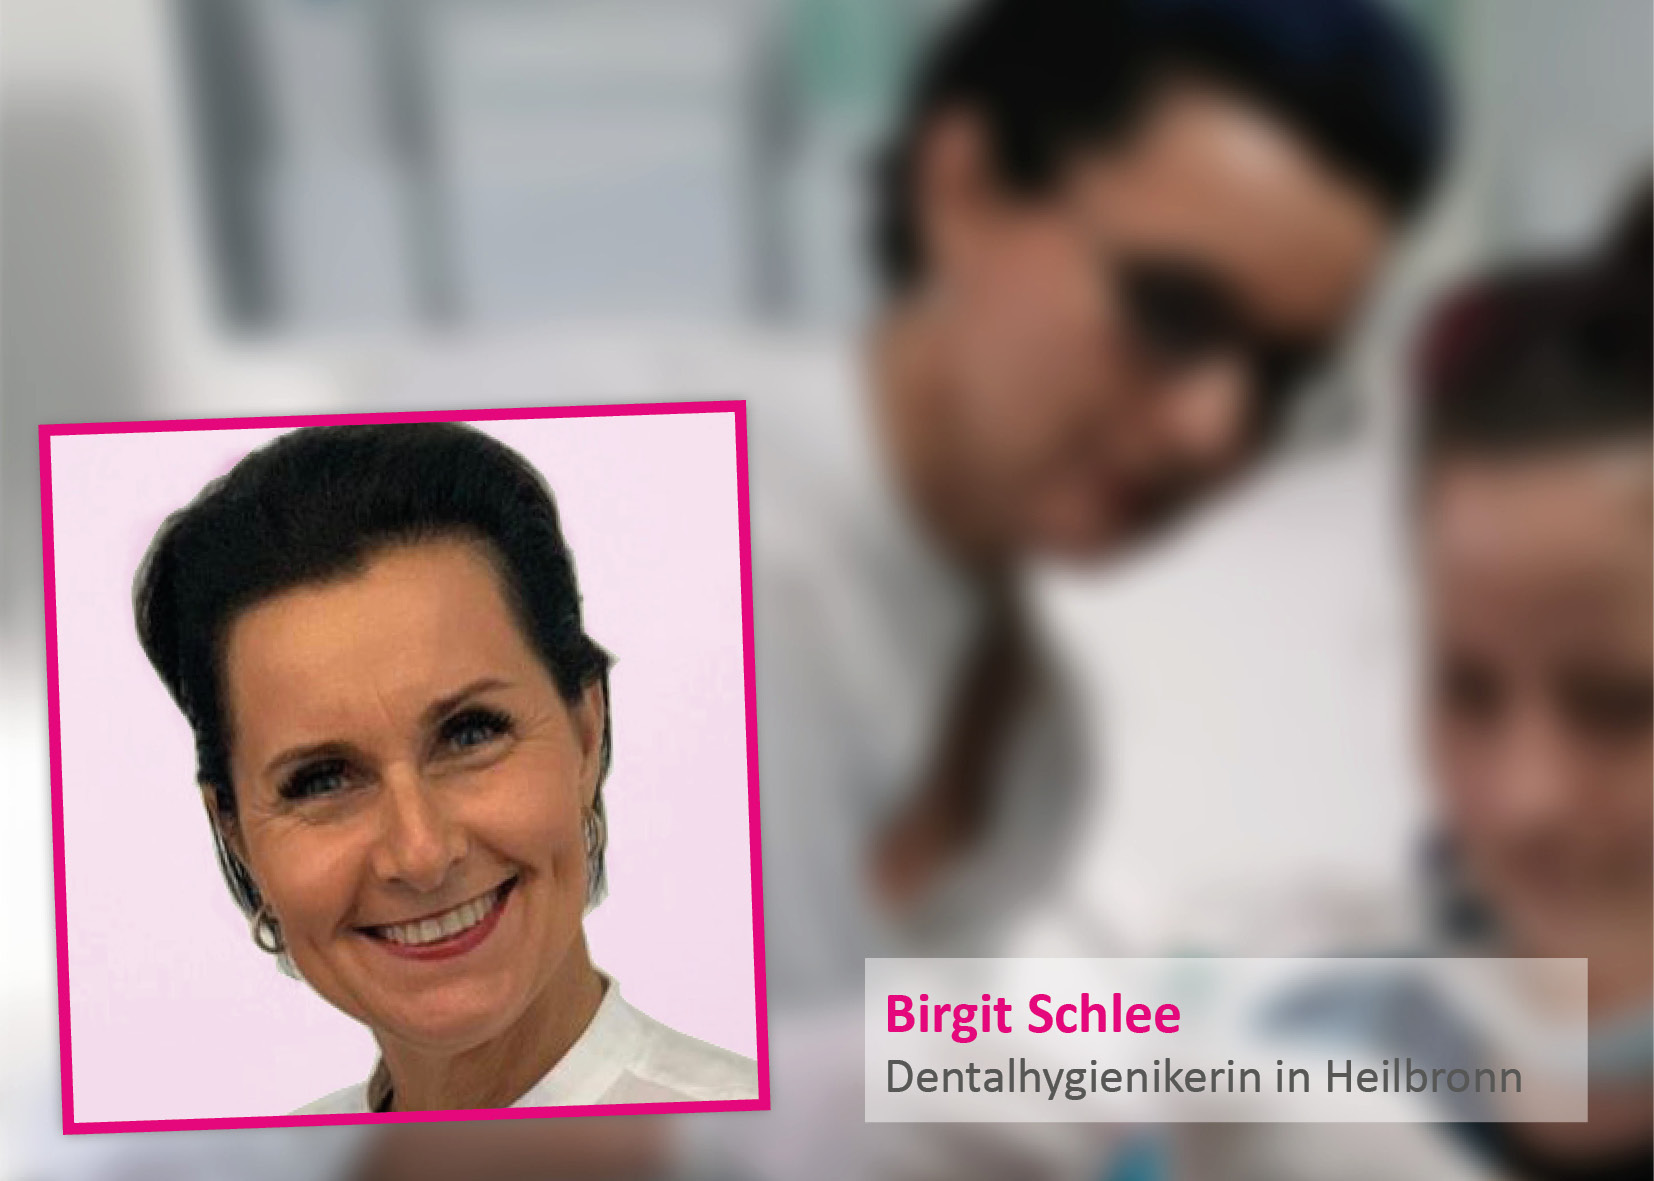 Birgit Schlee, higienista dental